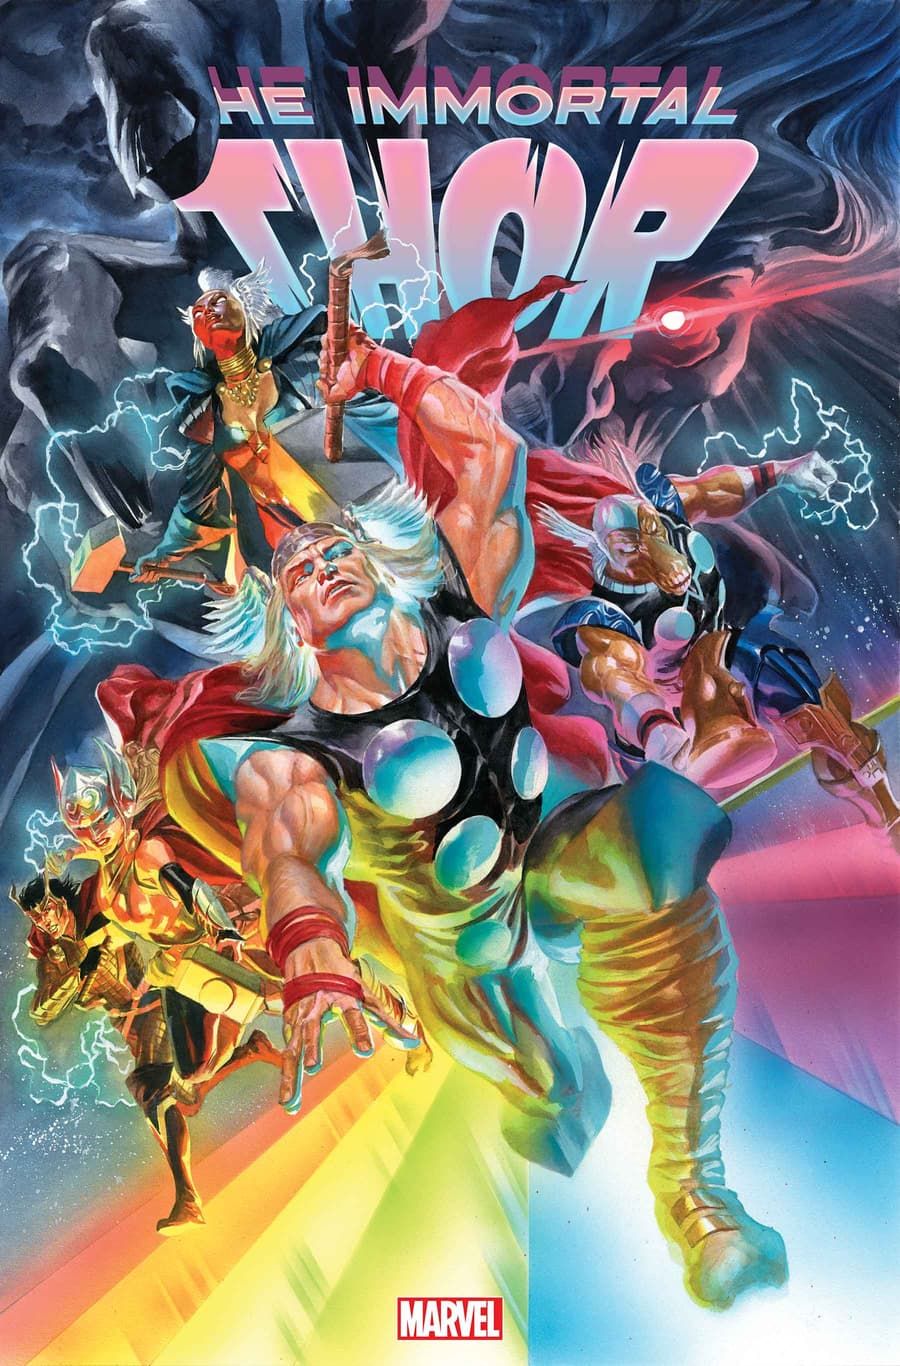 Arte da capa de Immortal Thor #5 por Alex Ross